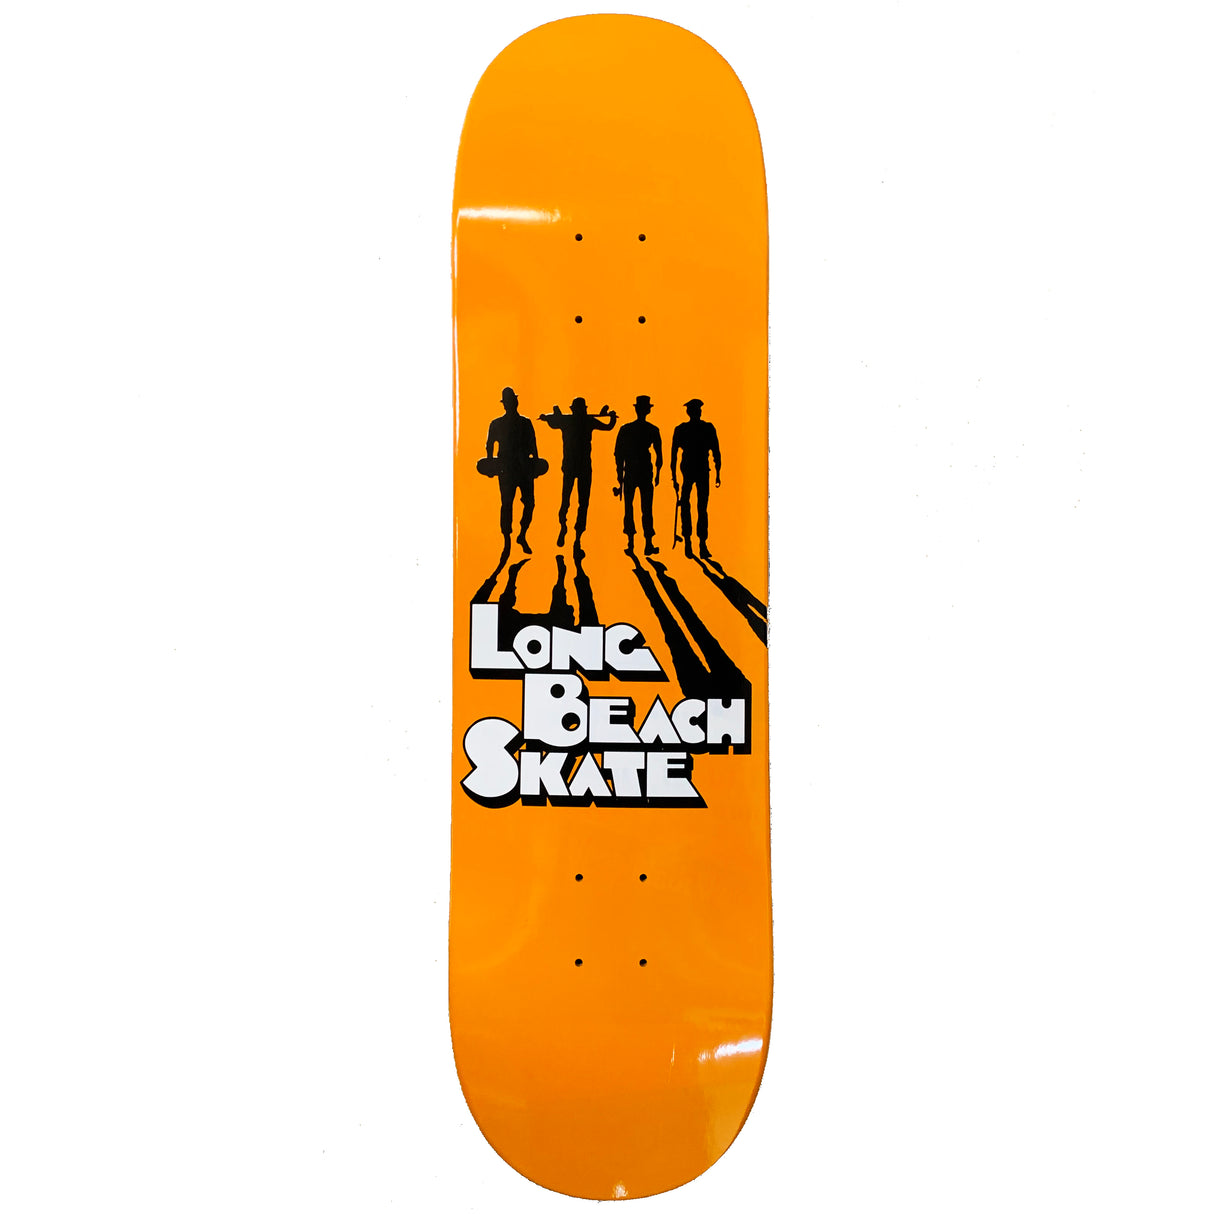 Long Beach Skate Co. Like Clockwork 8.0" Skateboard Deck